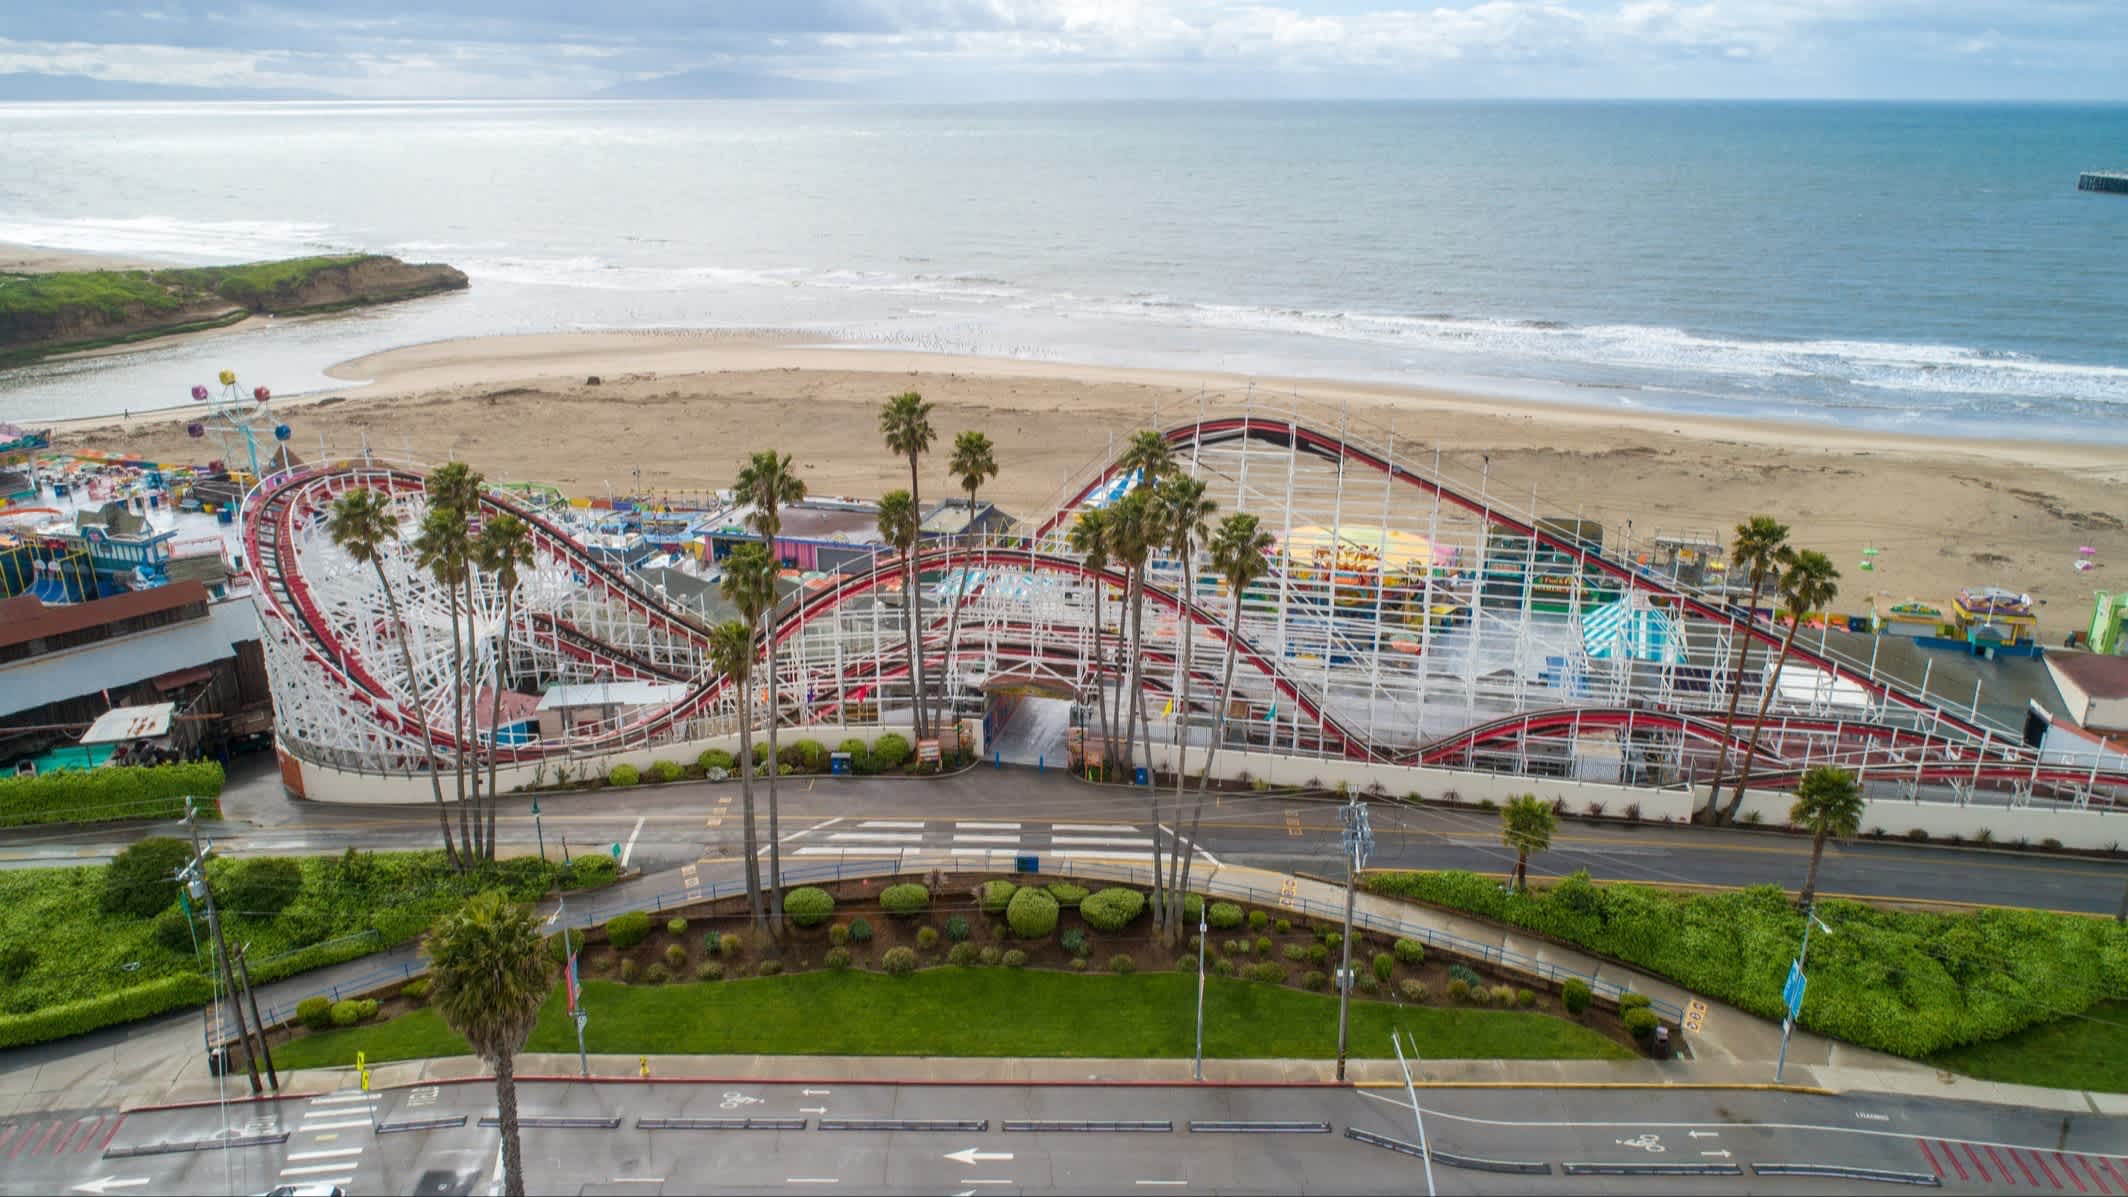 Der Strand Main Beach, Santa Cruz, Kalifornien, USA aus der Luft mit einer Achterbahn am Strand.